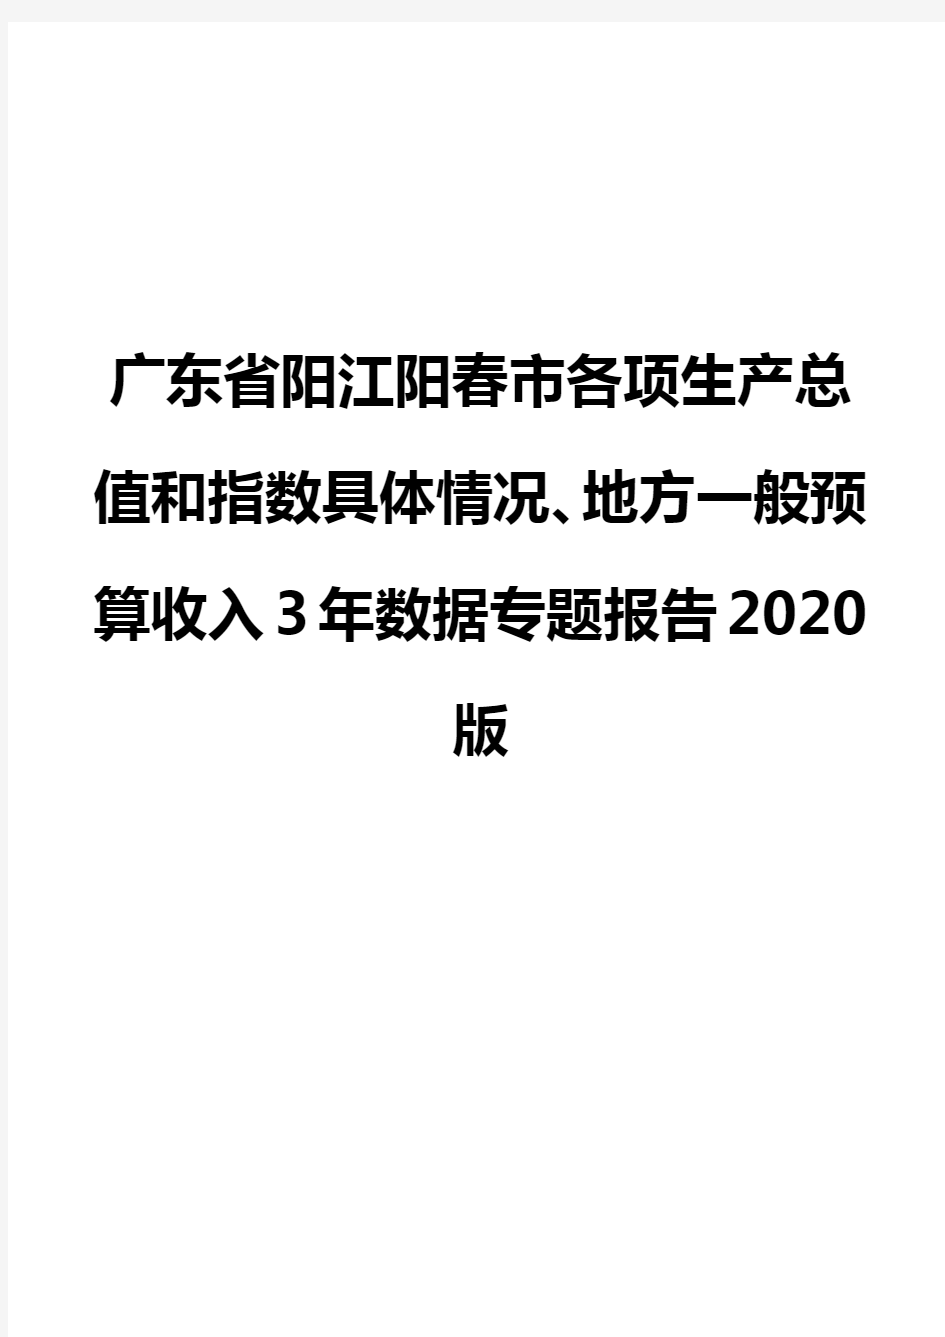 广东省阳江阳春市各项生产总值和指数具体情况、地方一般预算收入3年数据专题报告2020版